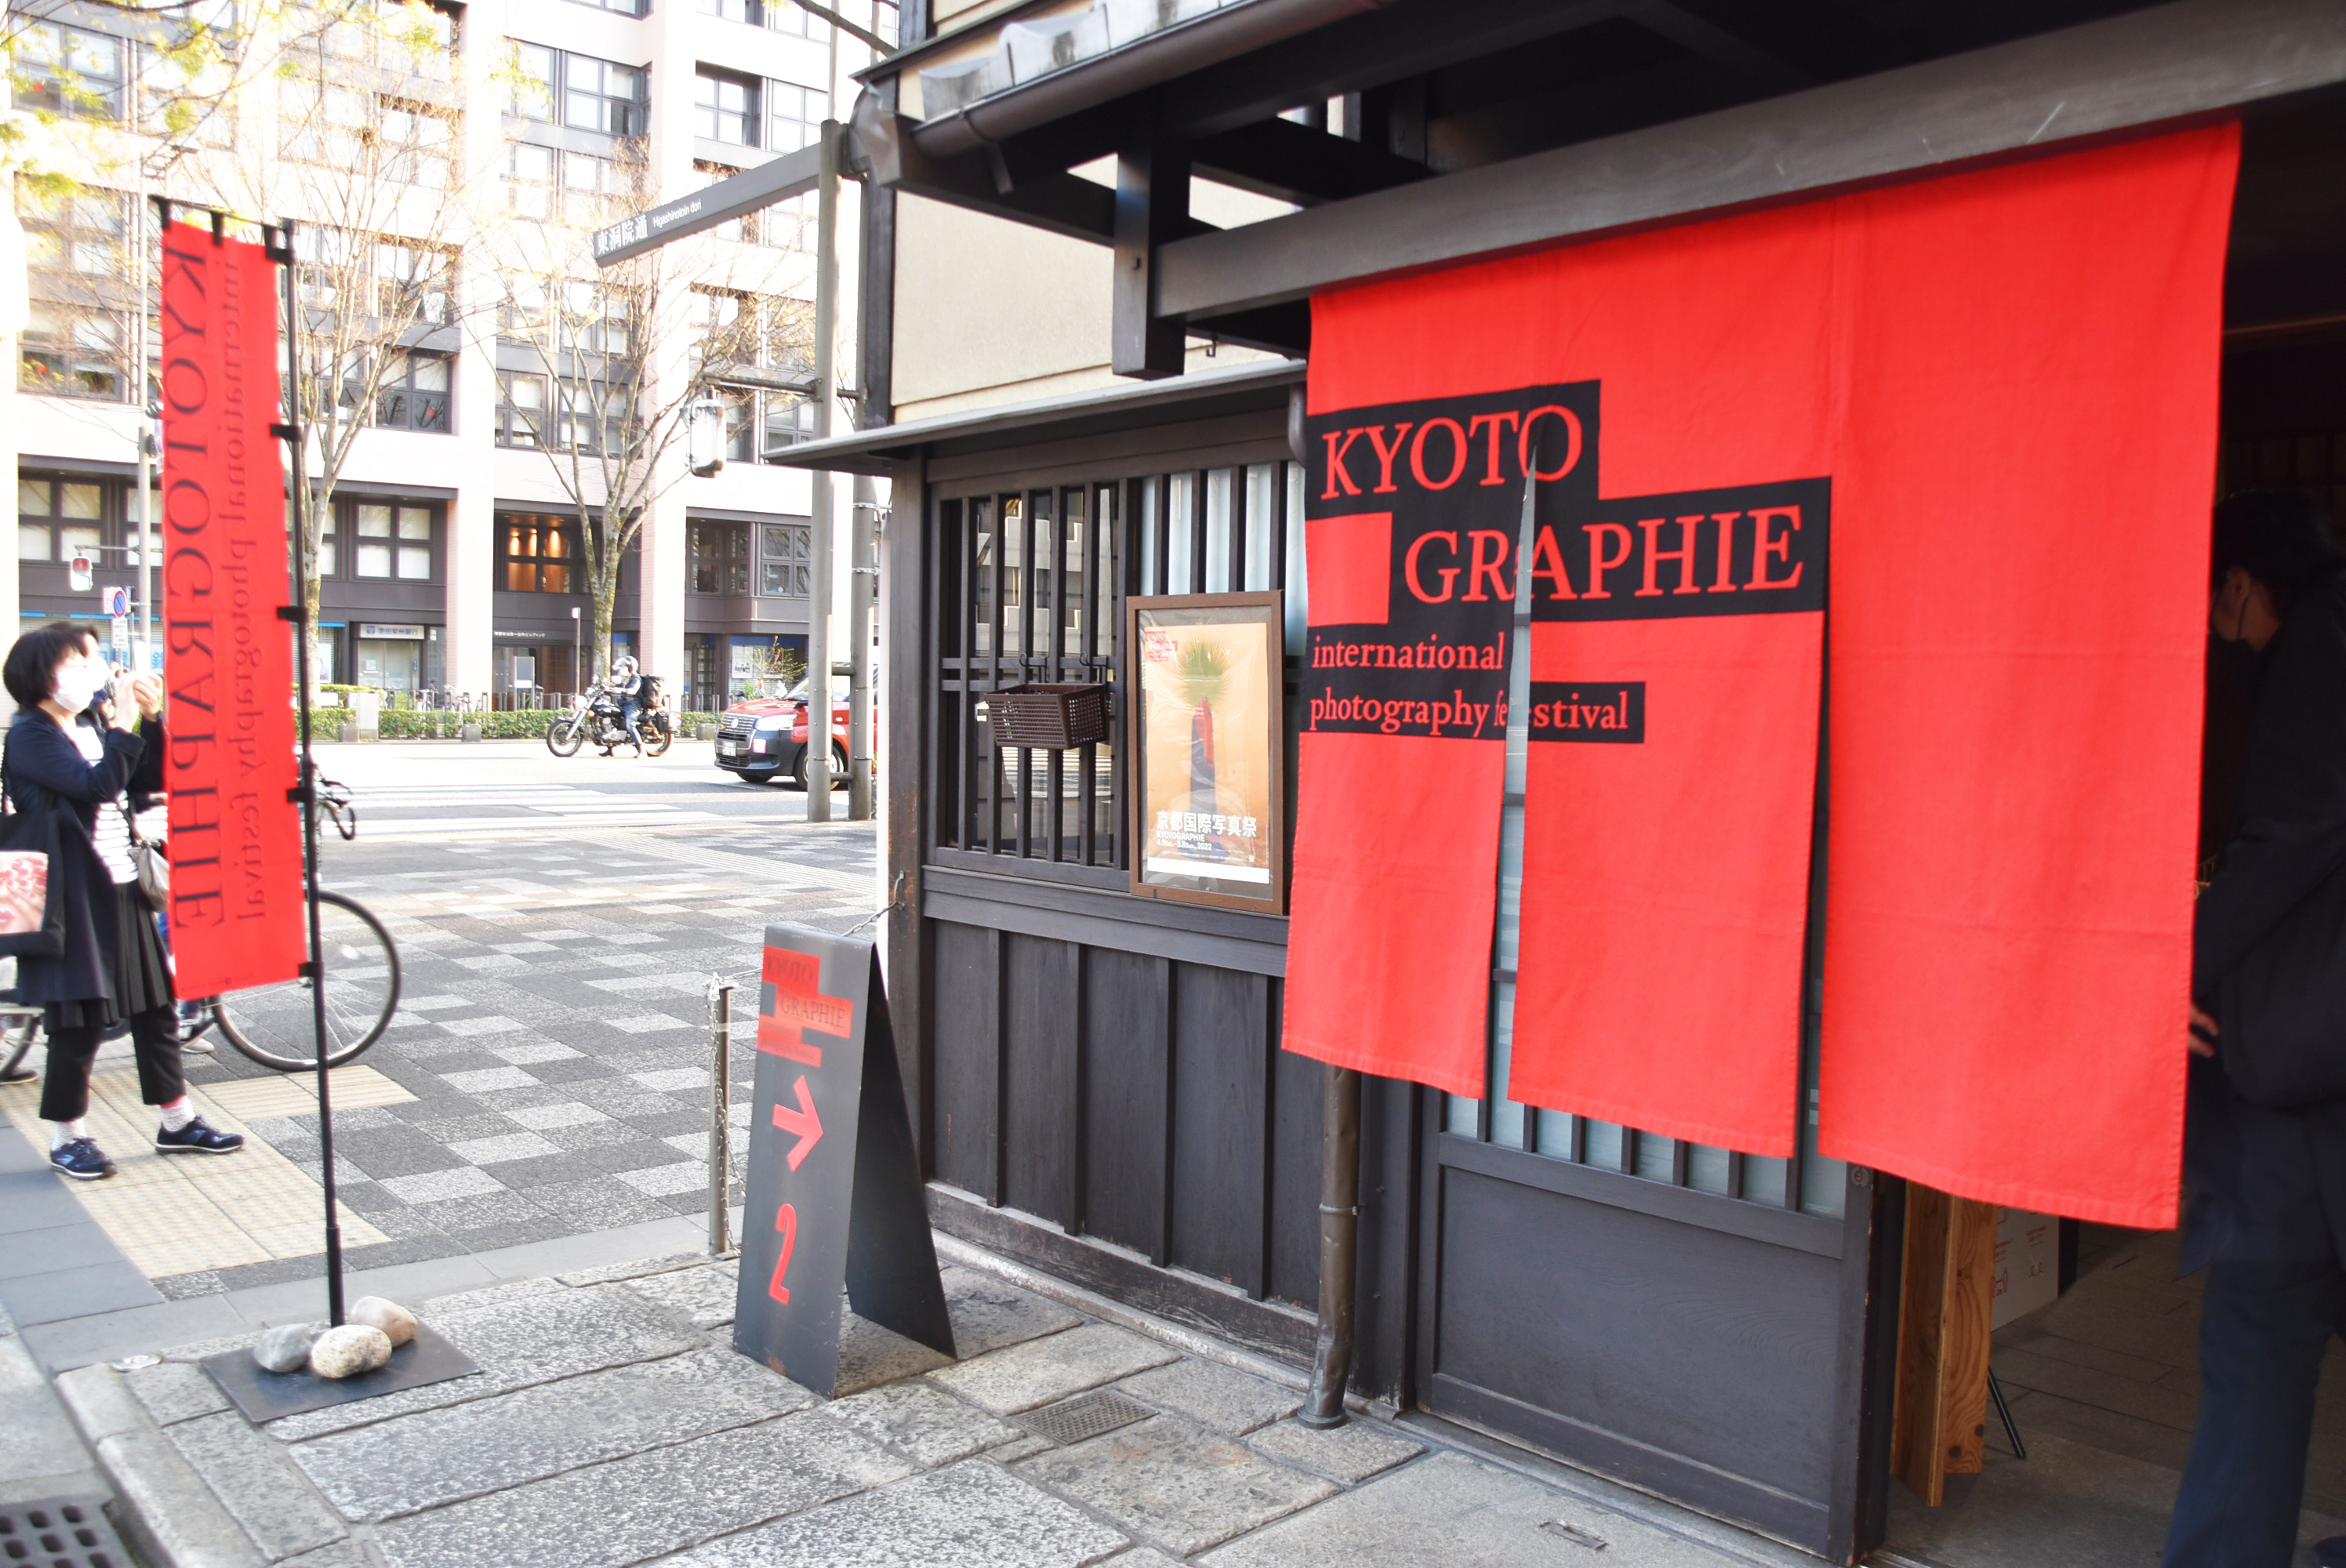 10周年を迎えた、京都が舞台の国際的な写真展「KYOTOGRAPHIE 京都国際写真祭 2022」。京都市から「京都市文化芸術有功賞」が授与される